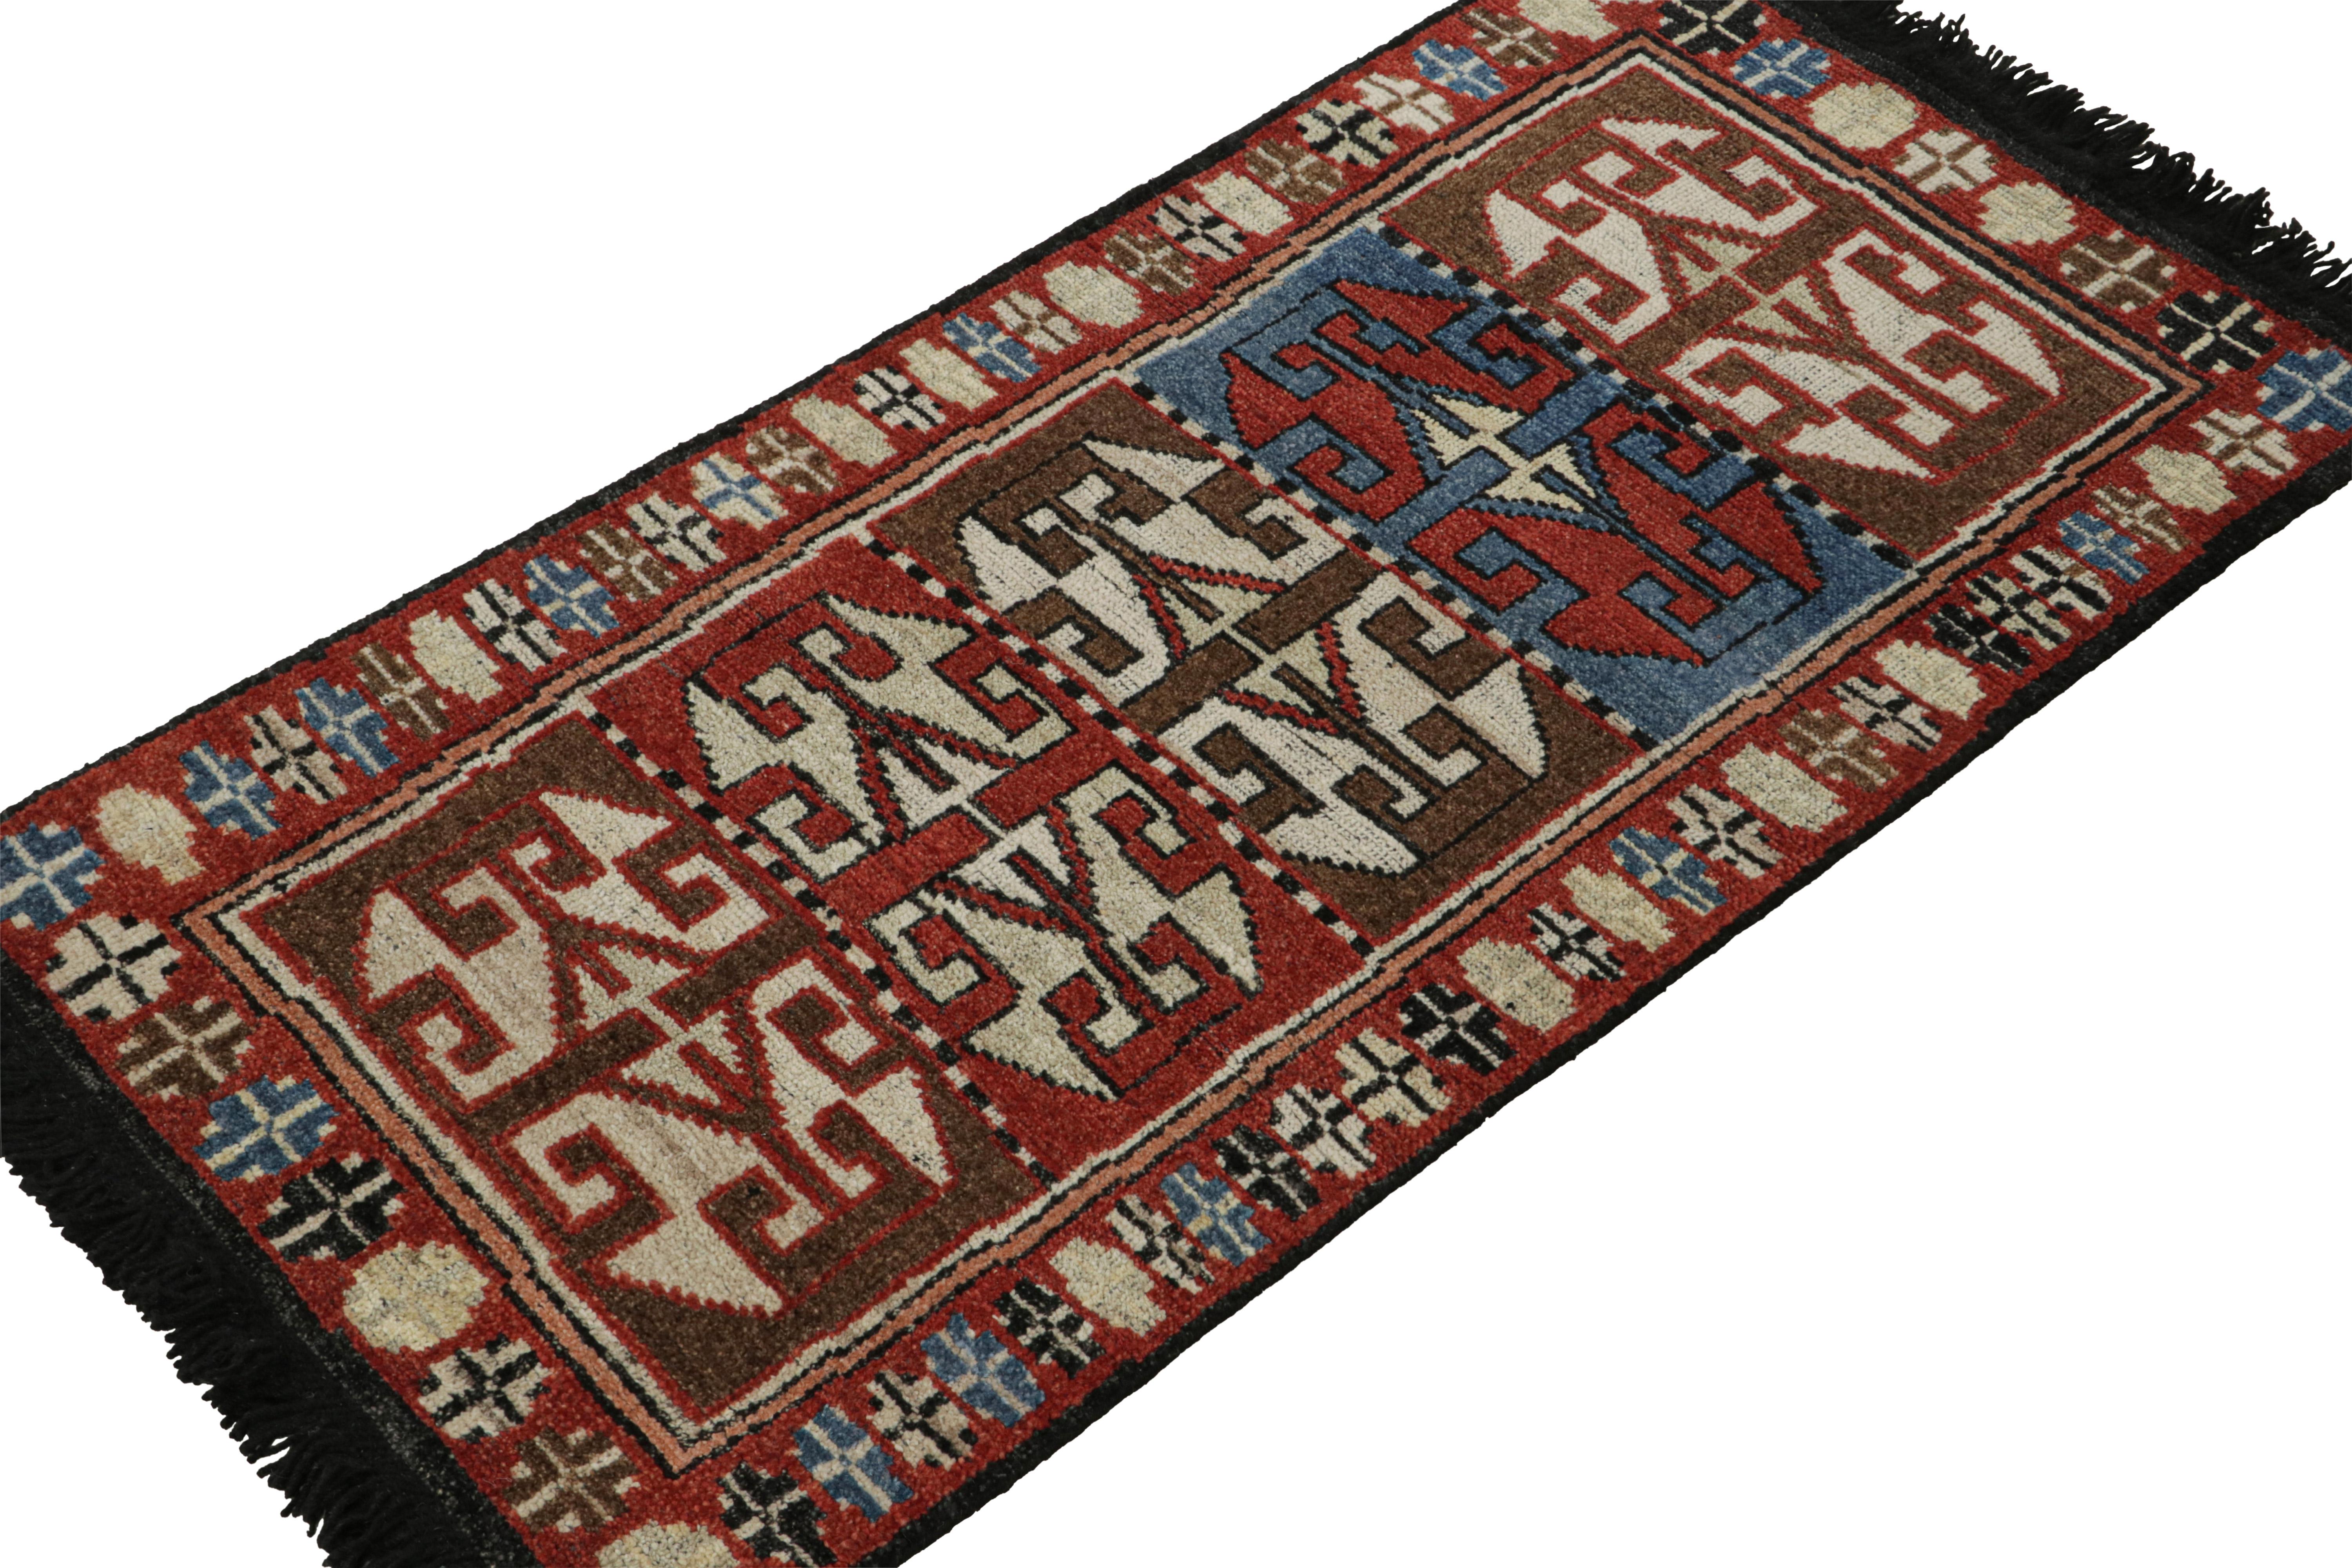 Dieser 2x4-Teppich ist ein großartiger Neuzugang in der klassischen Burano-Kollektion von Rug & Kilim. Handgeknüpft aus Wolle.

Über das Design: 

Dieser Teppich zeigt geometrische Muster aus primitivistischen, nomadischen Motiven in satten Rot-,